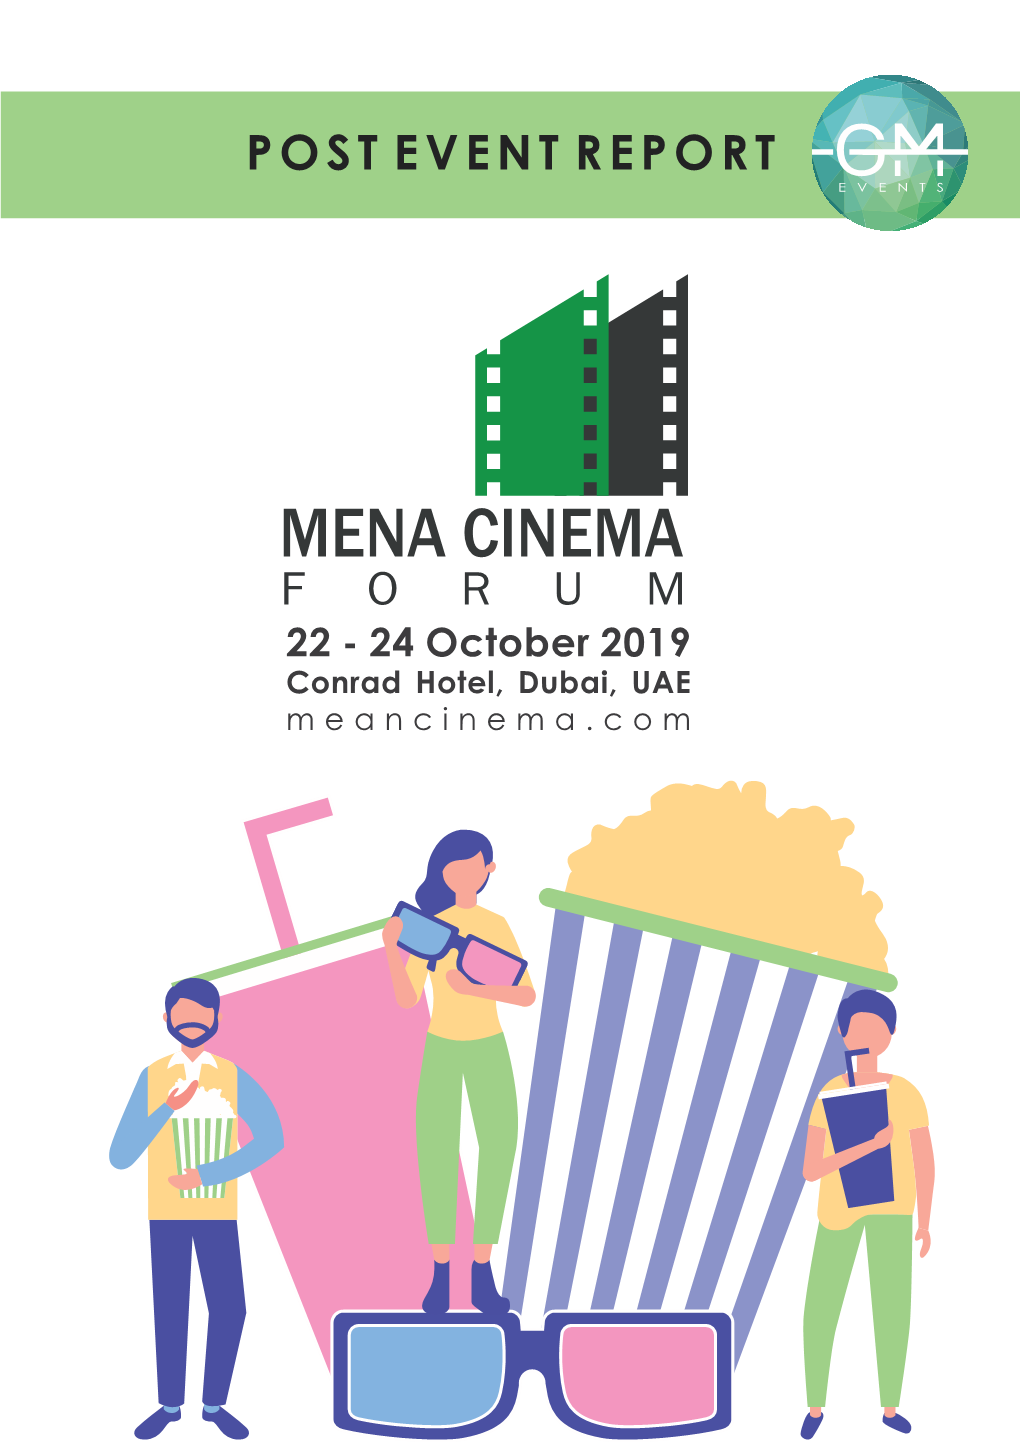 MENA CINEMA FORUM 22 - 24 October 2019 Conrad Hotel, Dubai, UAE Meancinema.Com EVENT in NUMBERS